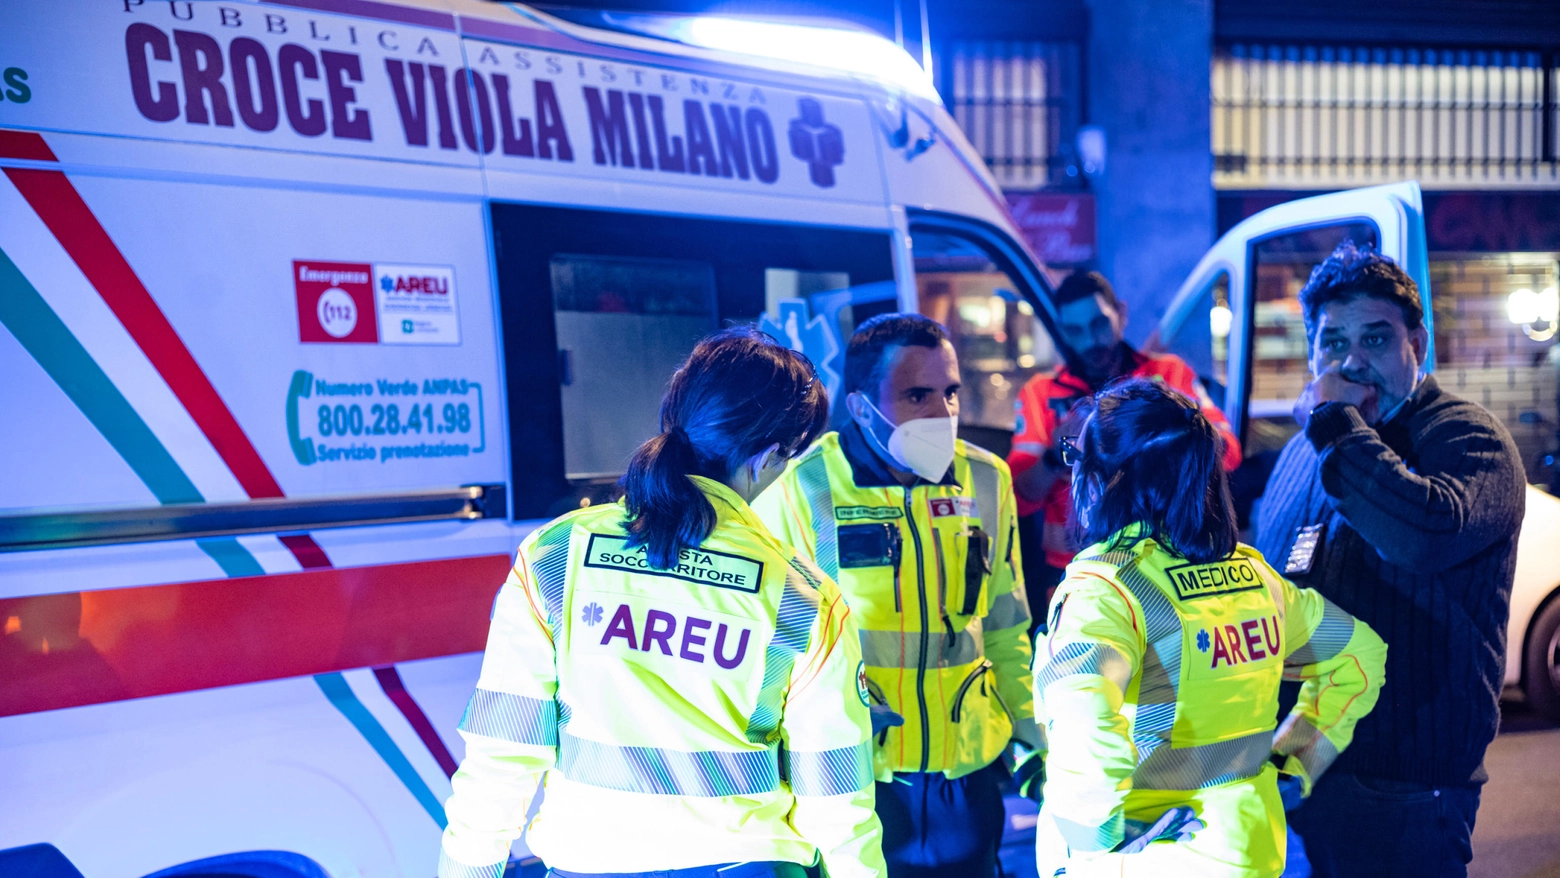 Passanti accoltellati per rapina a Milano, sei feriti